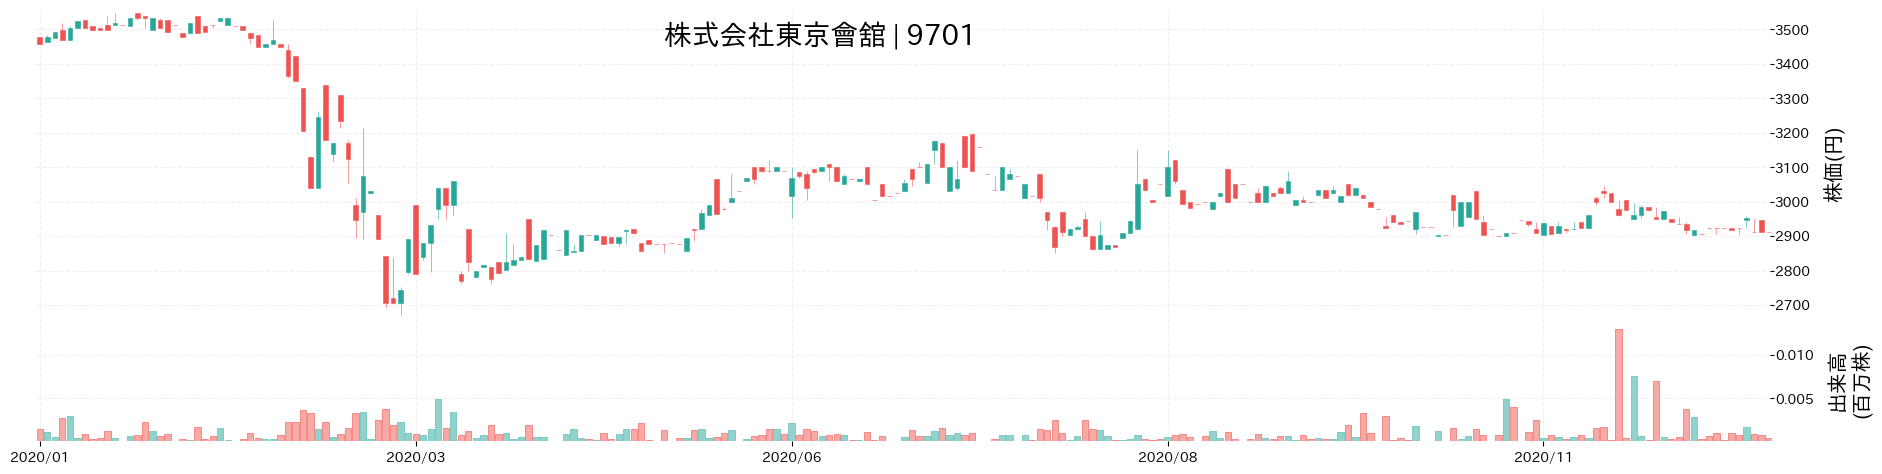 東京會舘の株価推移(2020)